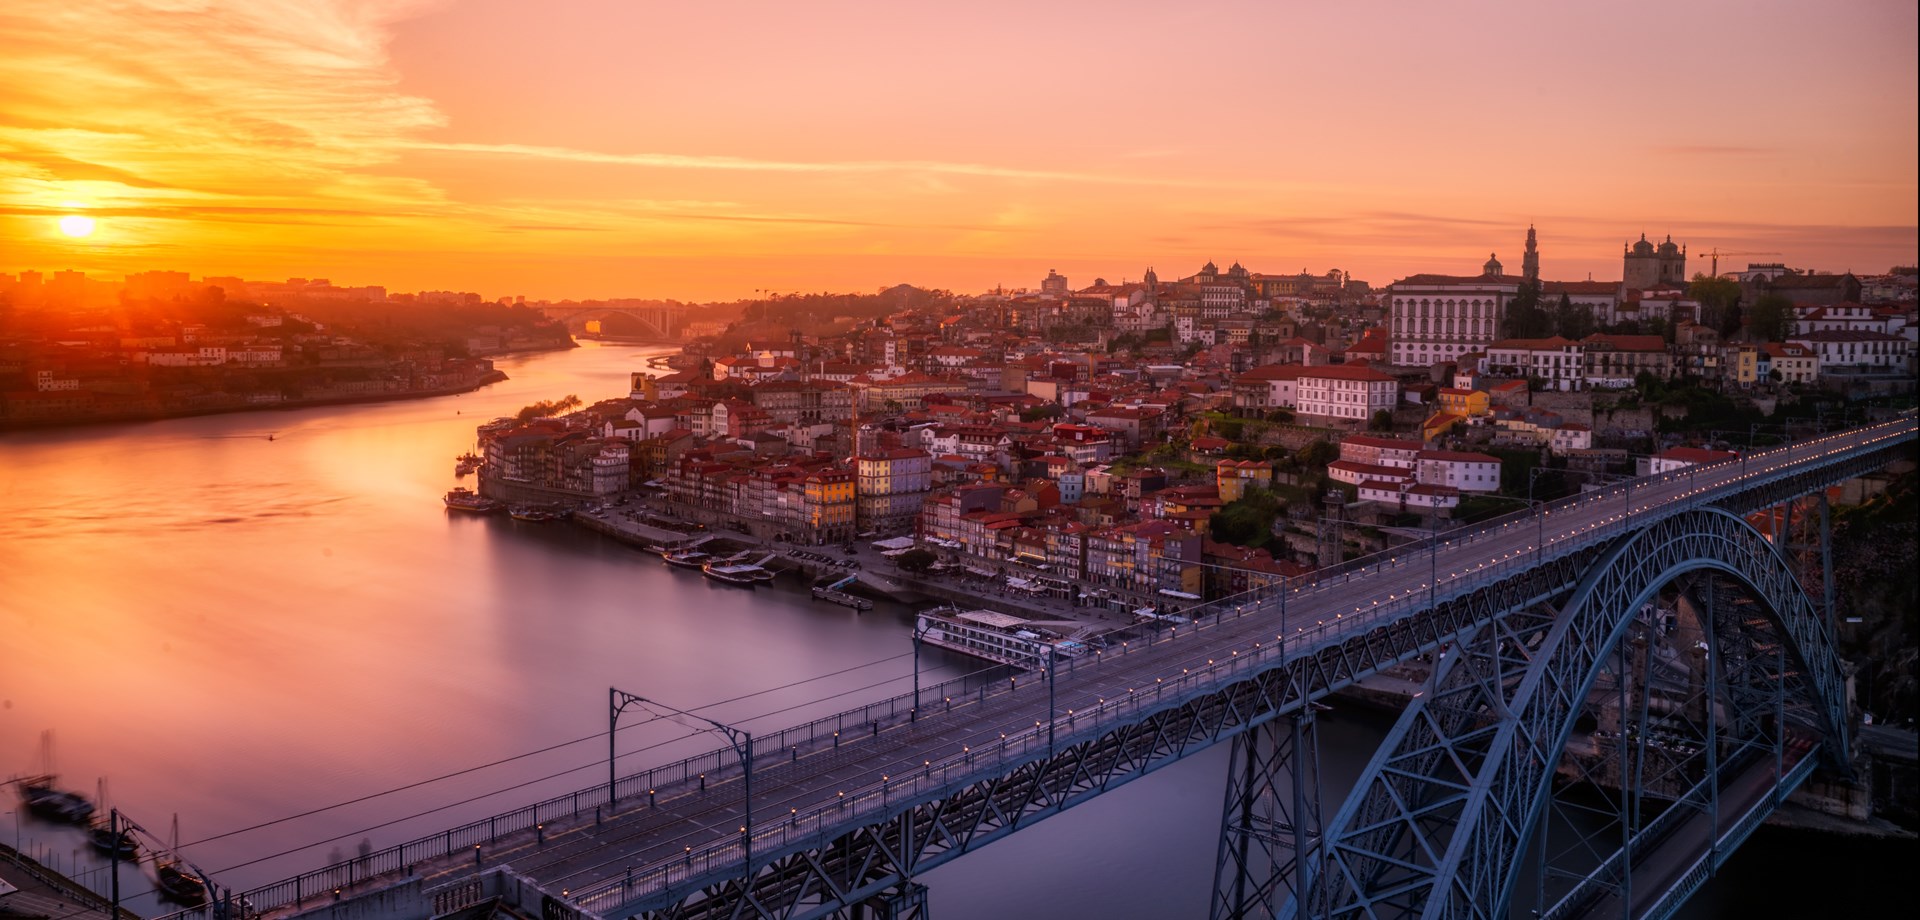 Porto parmi les attractions « cinq étoiles » les plus populaires au monde par visiteur